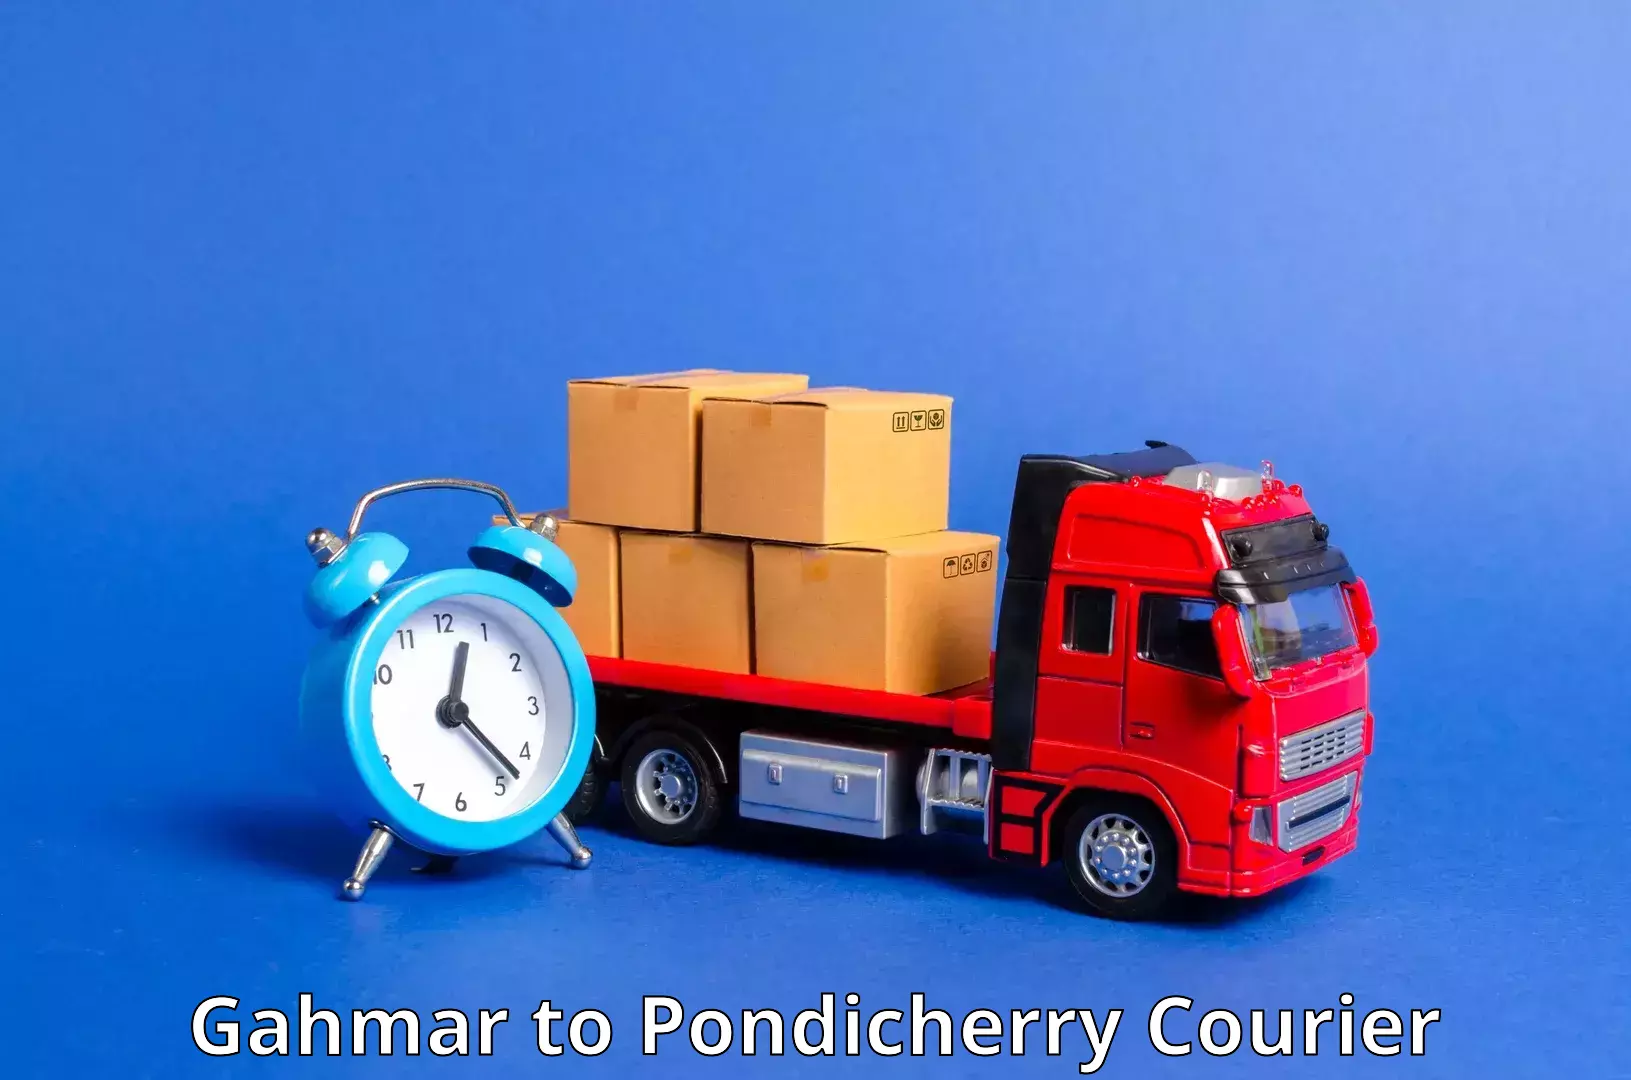 Flexible parcel services Gahmar to Pondicherry